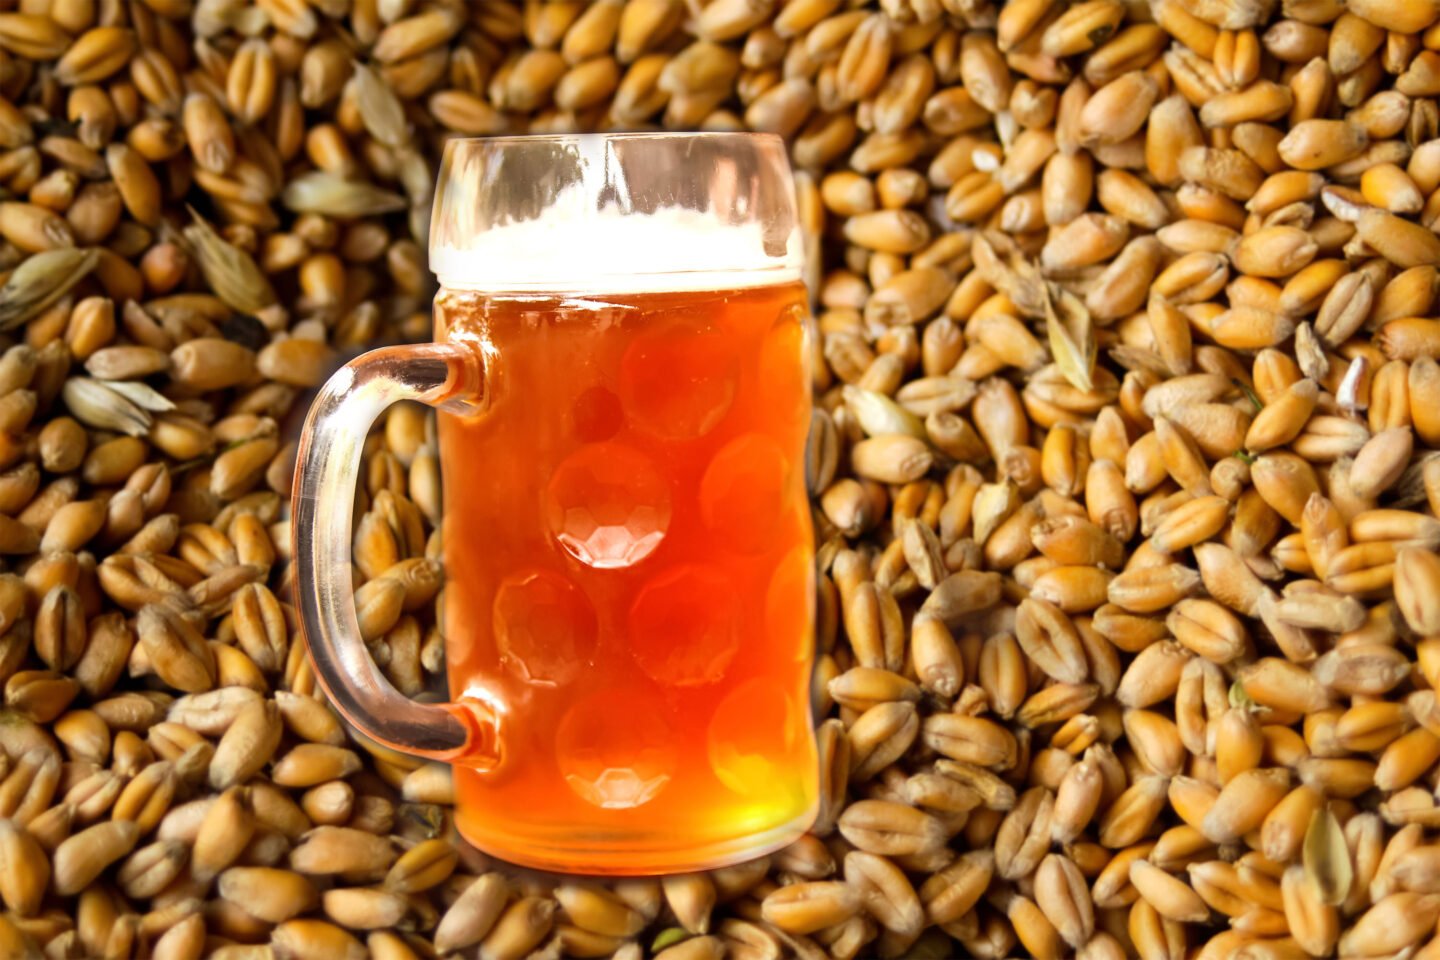 mug of beer on pearl barley grains background